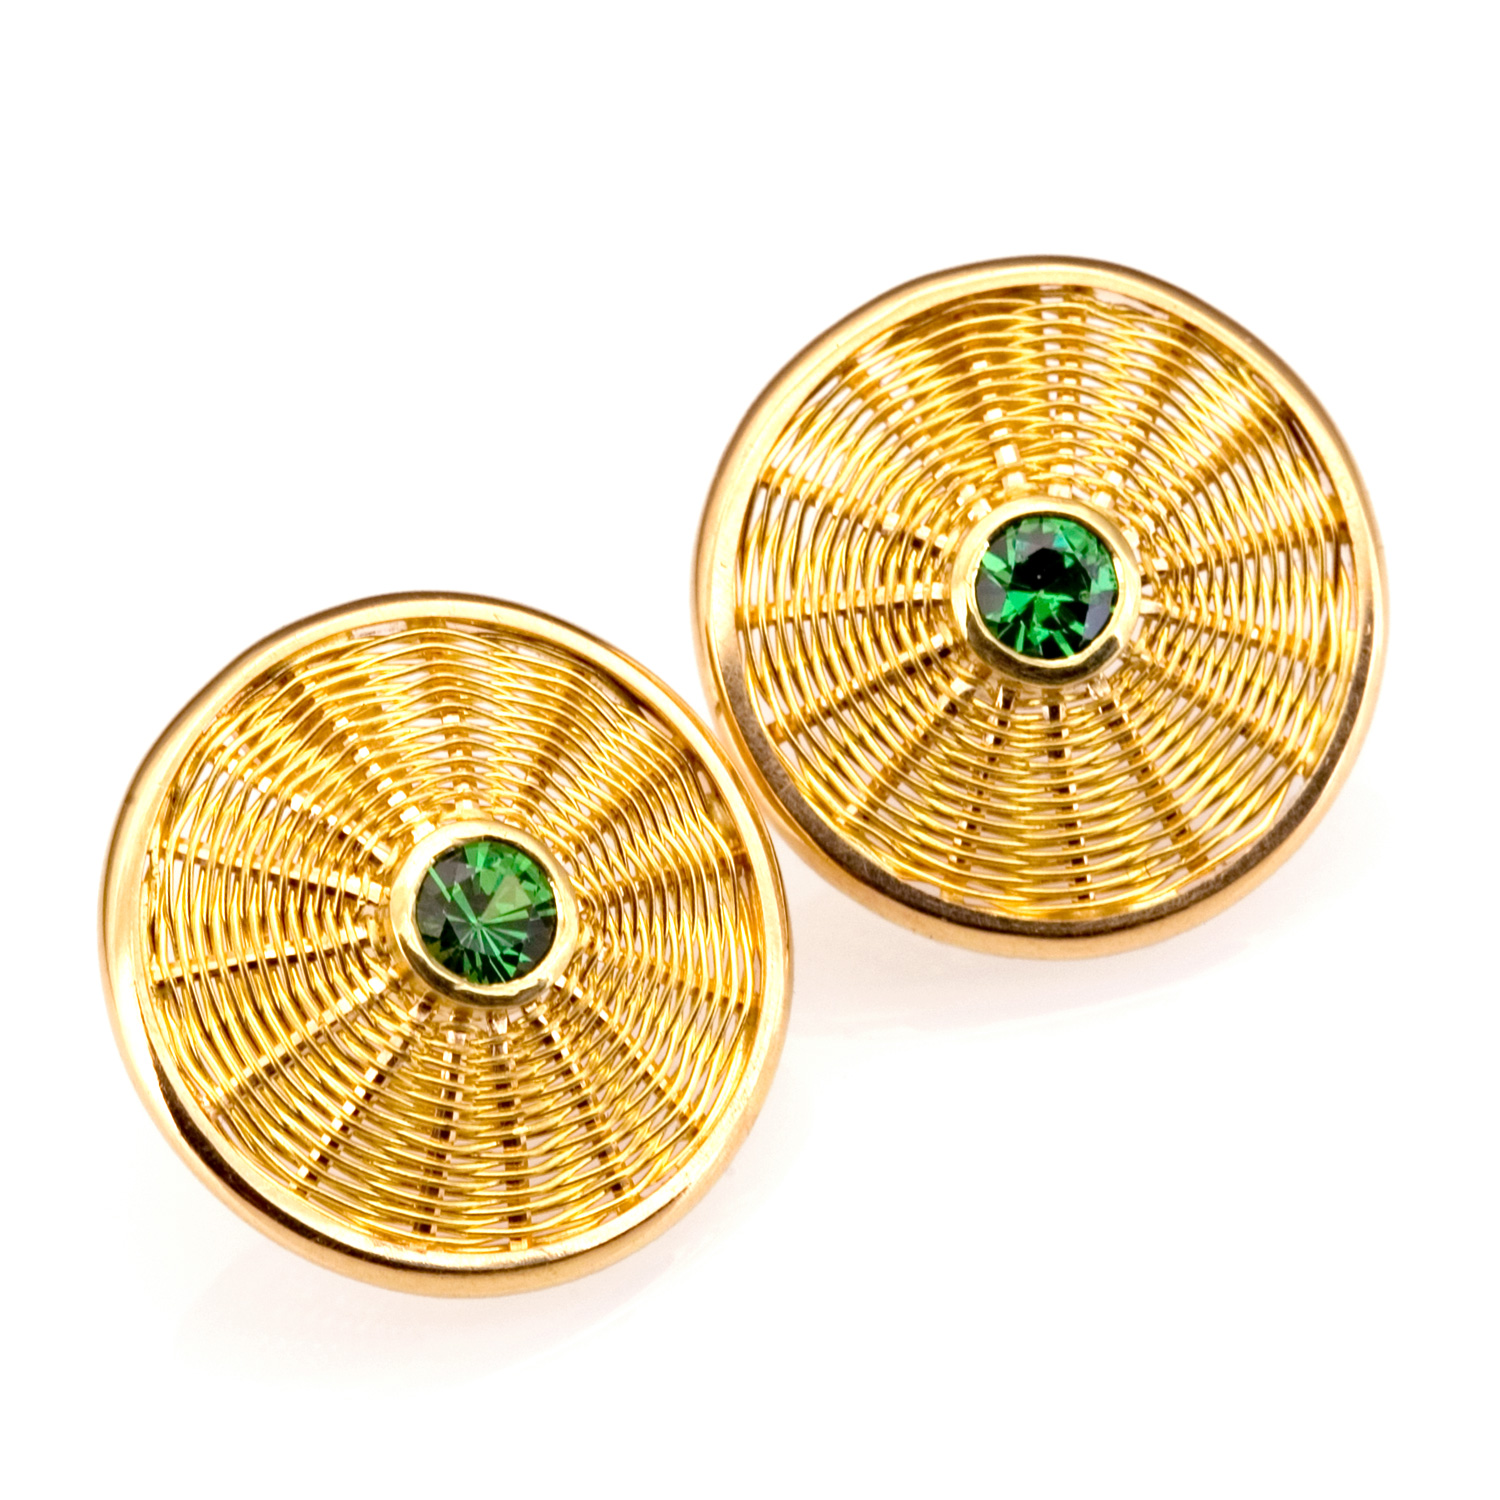 Sunburst Weave Earrings in 18k gold with tsavorite by Tamberlaine